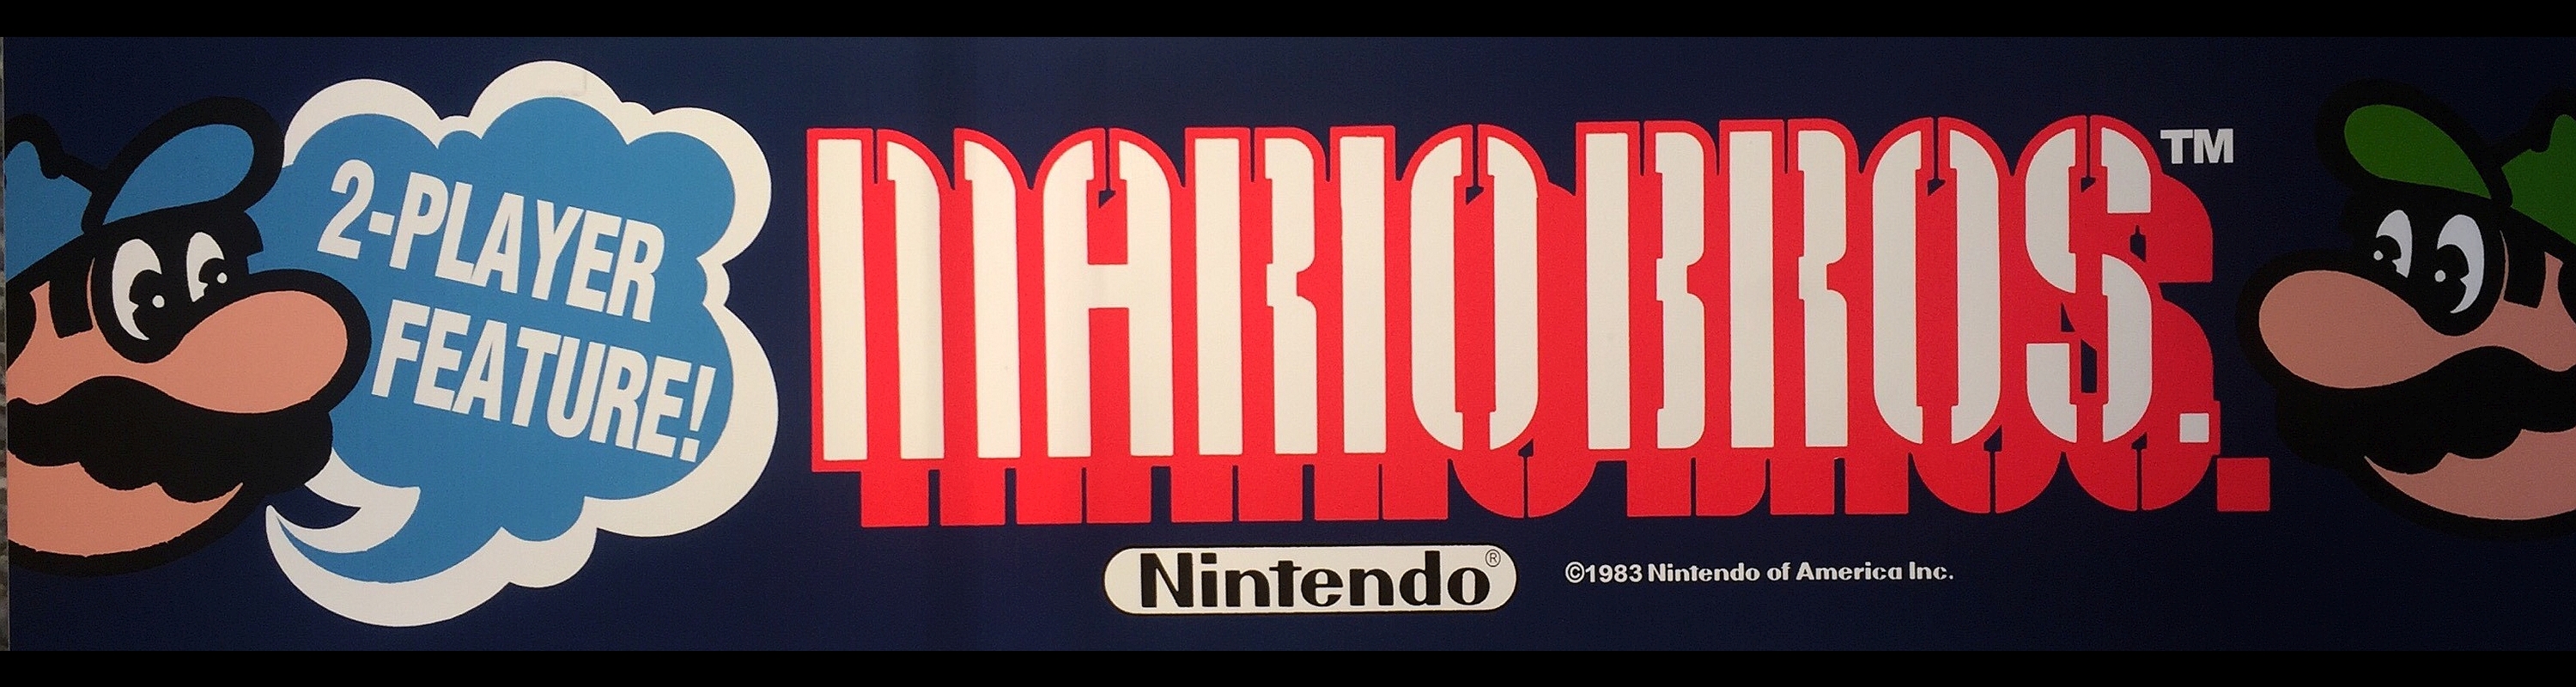 Video Game Mario Bros 3000x800